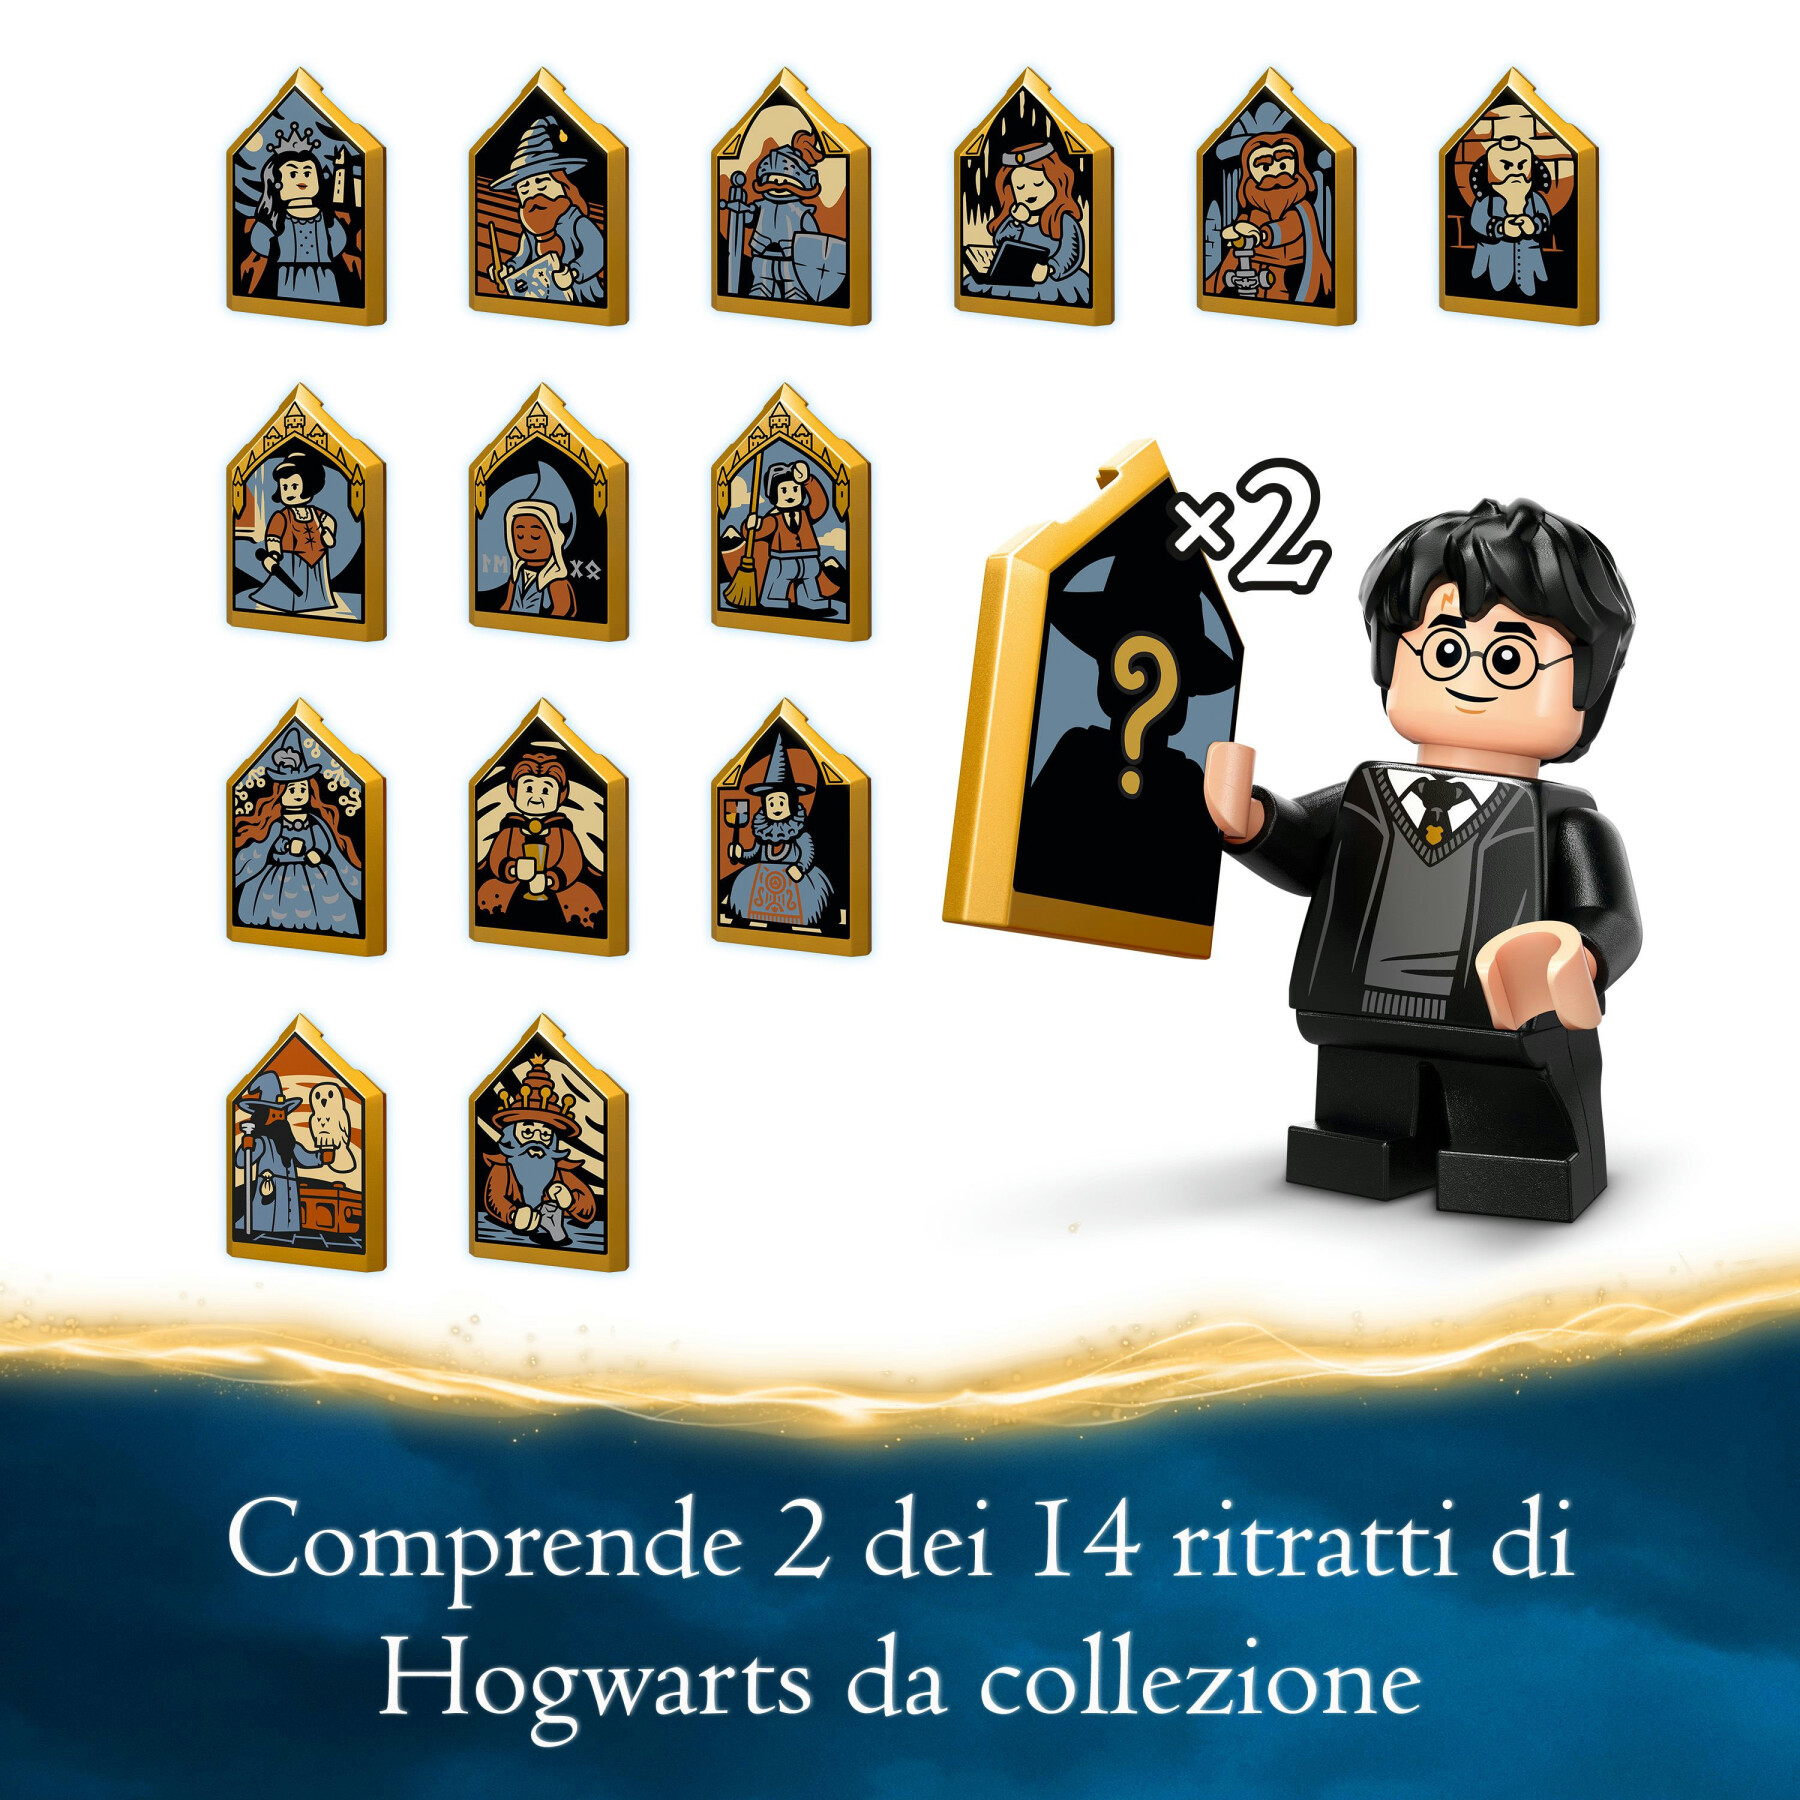 Lego harry potter 76428 la capanna di hagrid: una visita inattesa, giochi per bambini 8+ anni, casa giocattolo con 7 personaggi - Harry Potter, LEGO® Harry Potter™